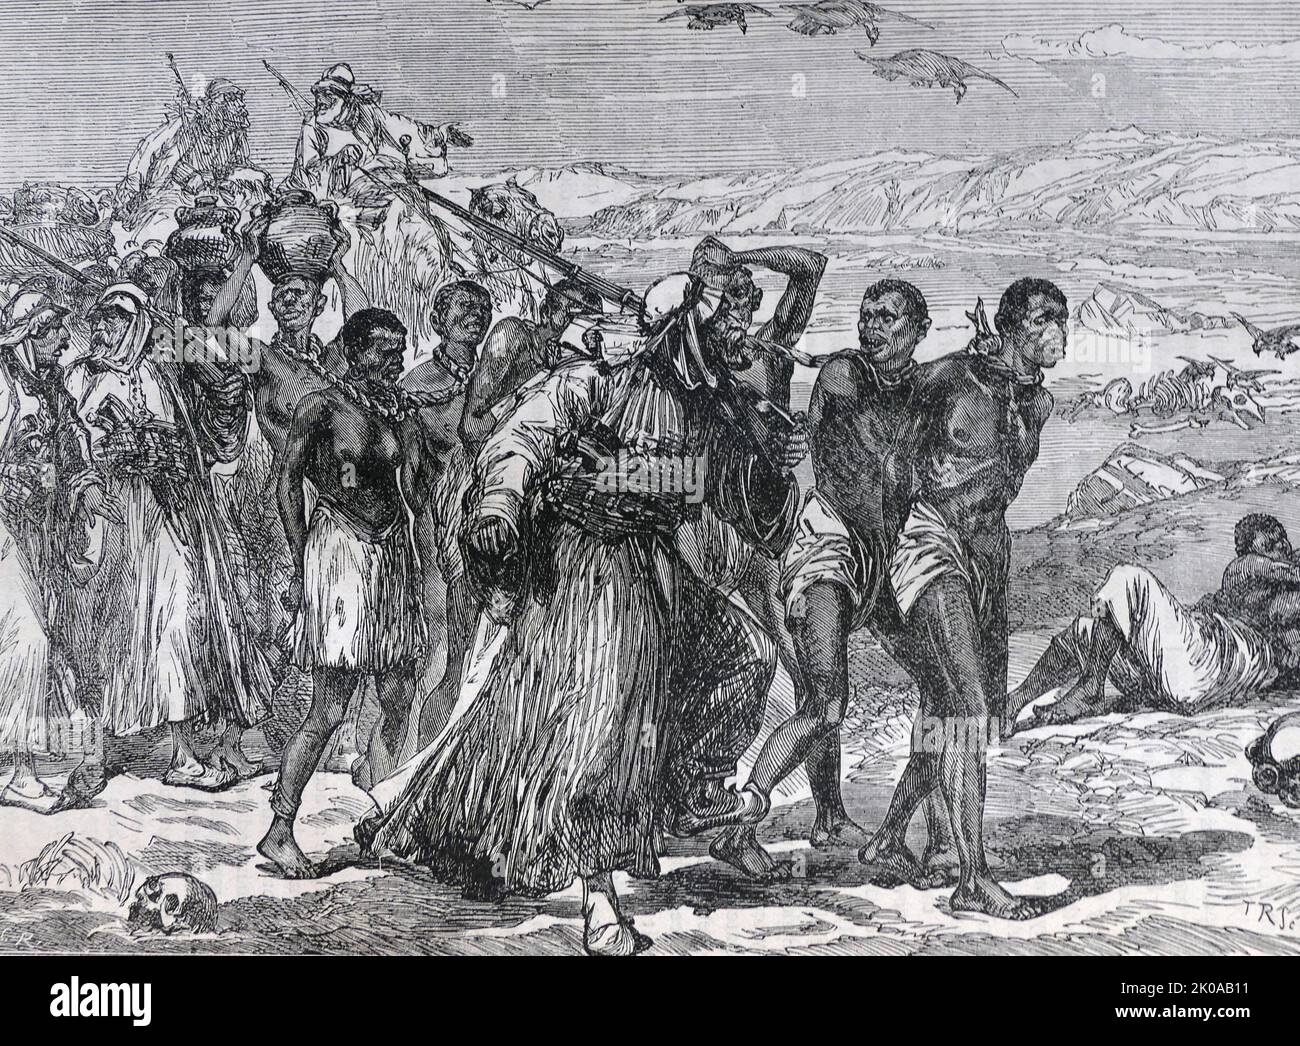 Bande esclave traversant le dessert africain. Illustration en noir et blanc Banque D'Images